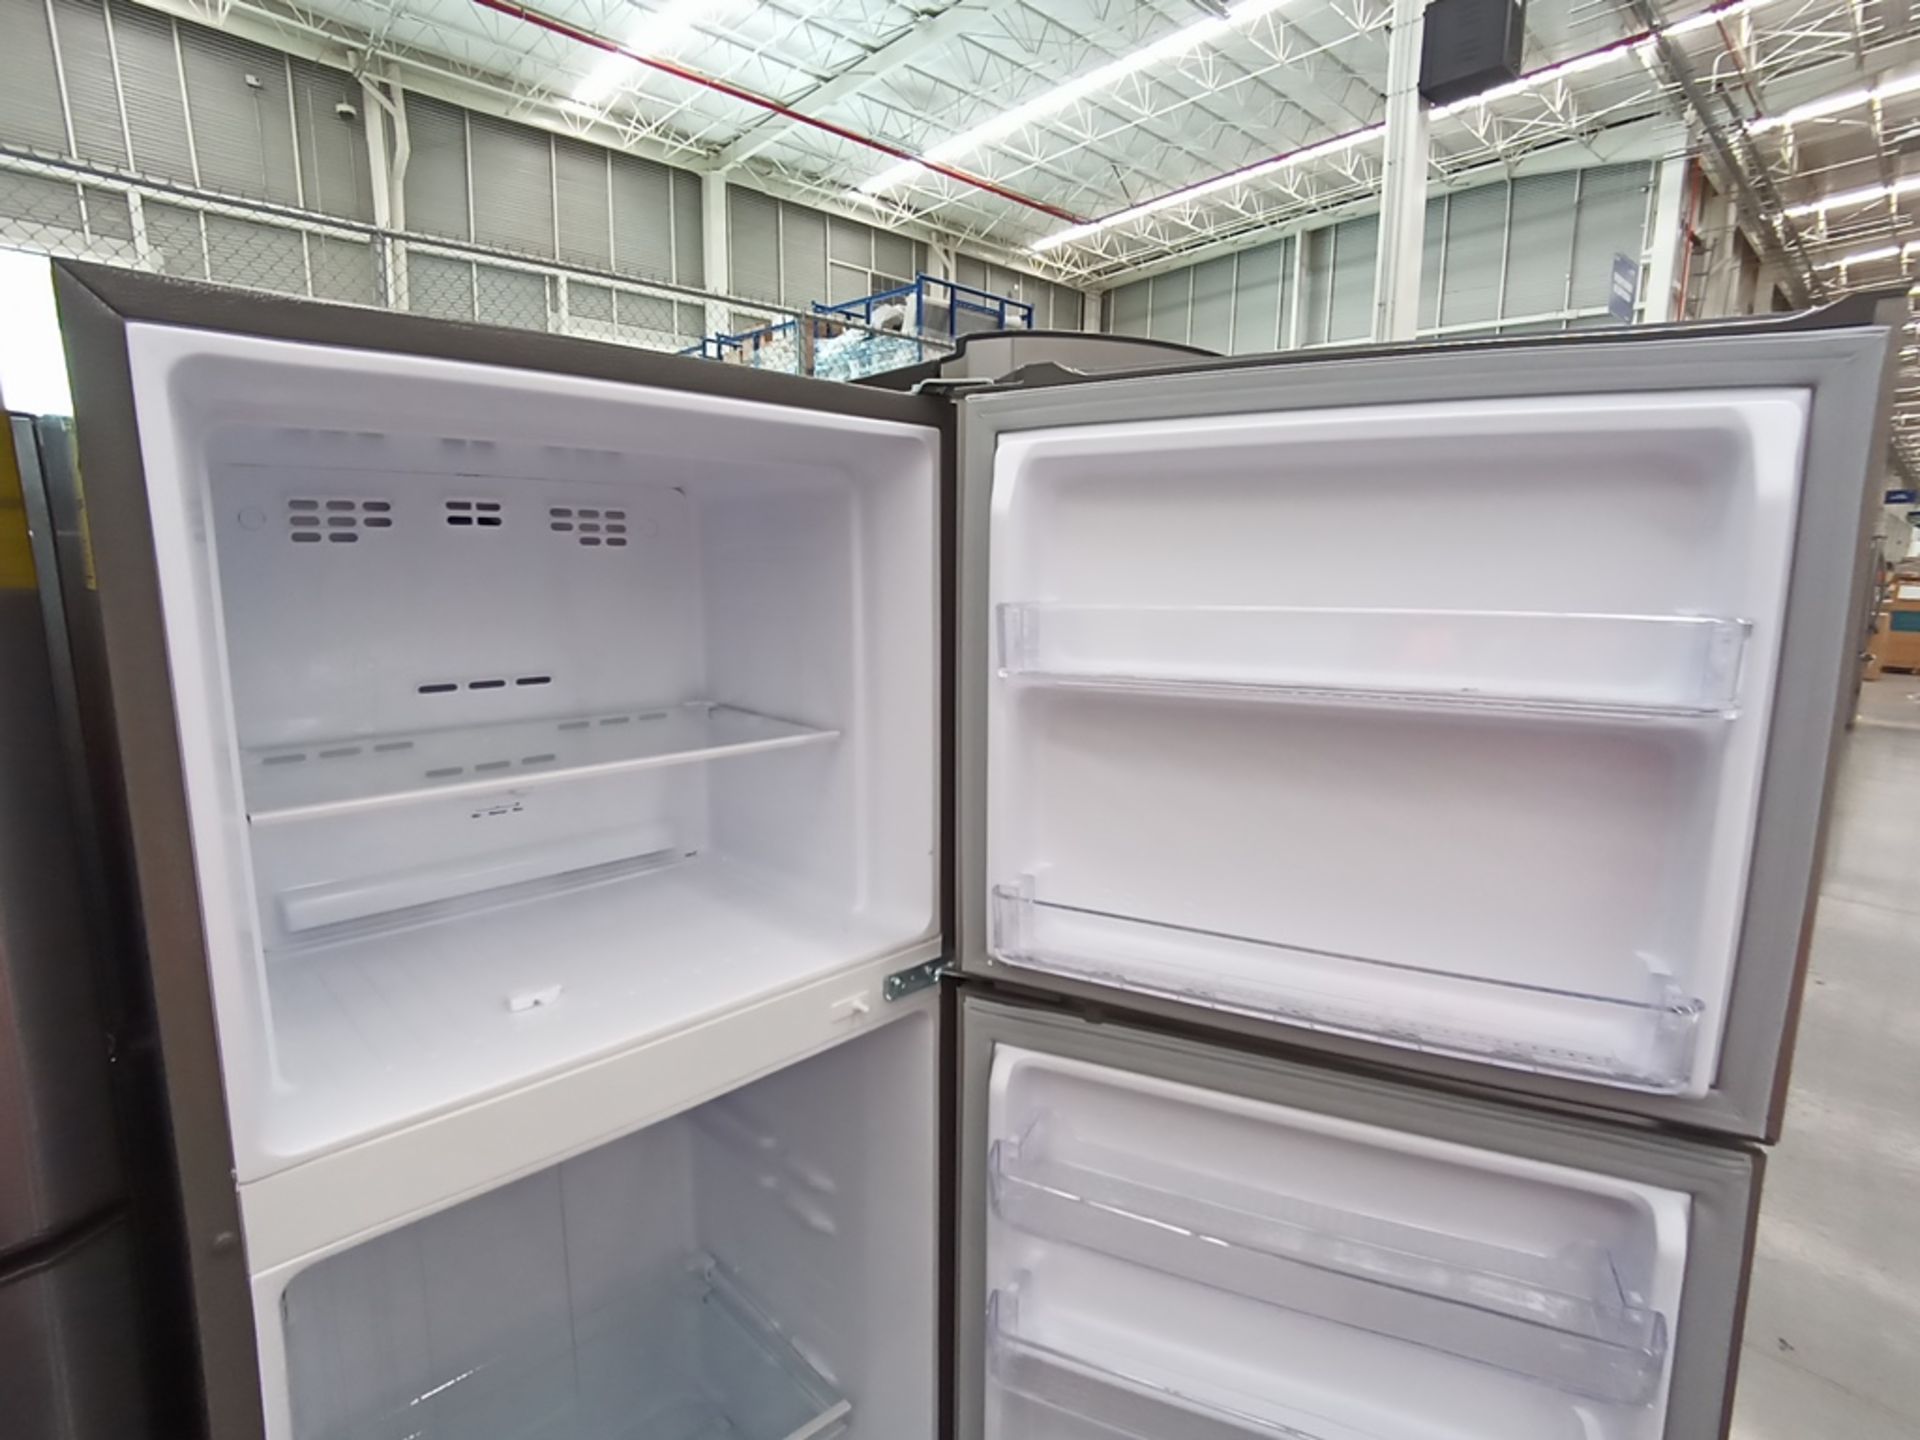 Lote de 2 refrigeradores contiene: 1 Refrigerador con dispensador de agua, Marca Winia, Modelo DFR- - Image 7 of 15